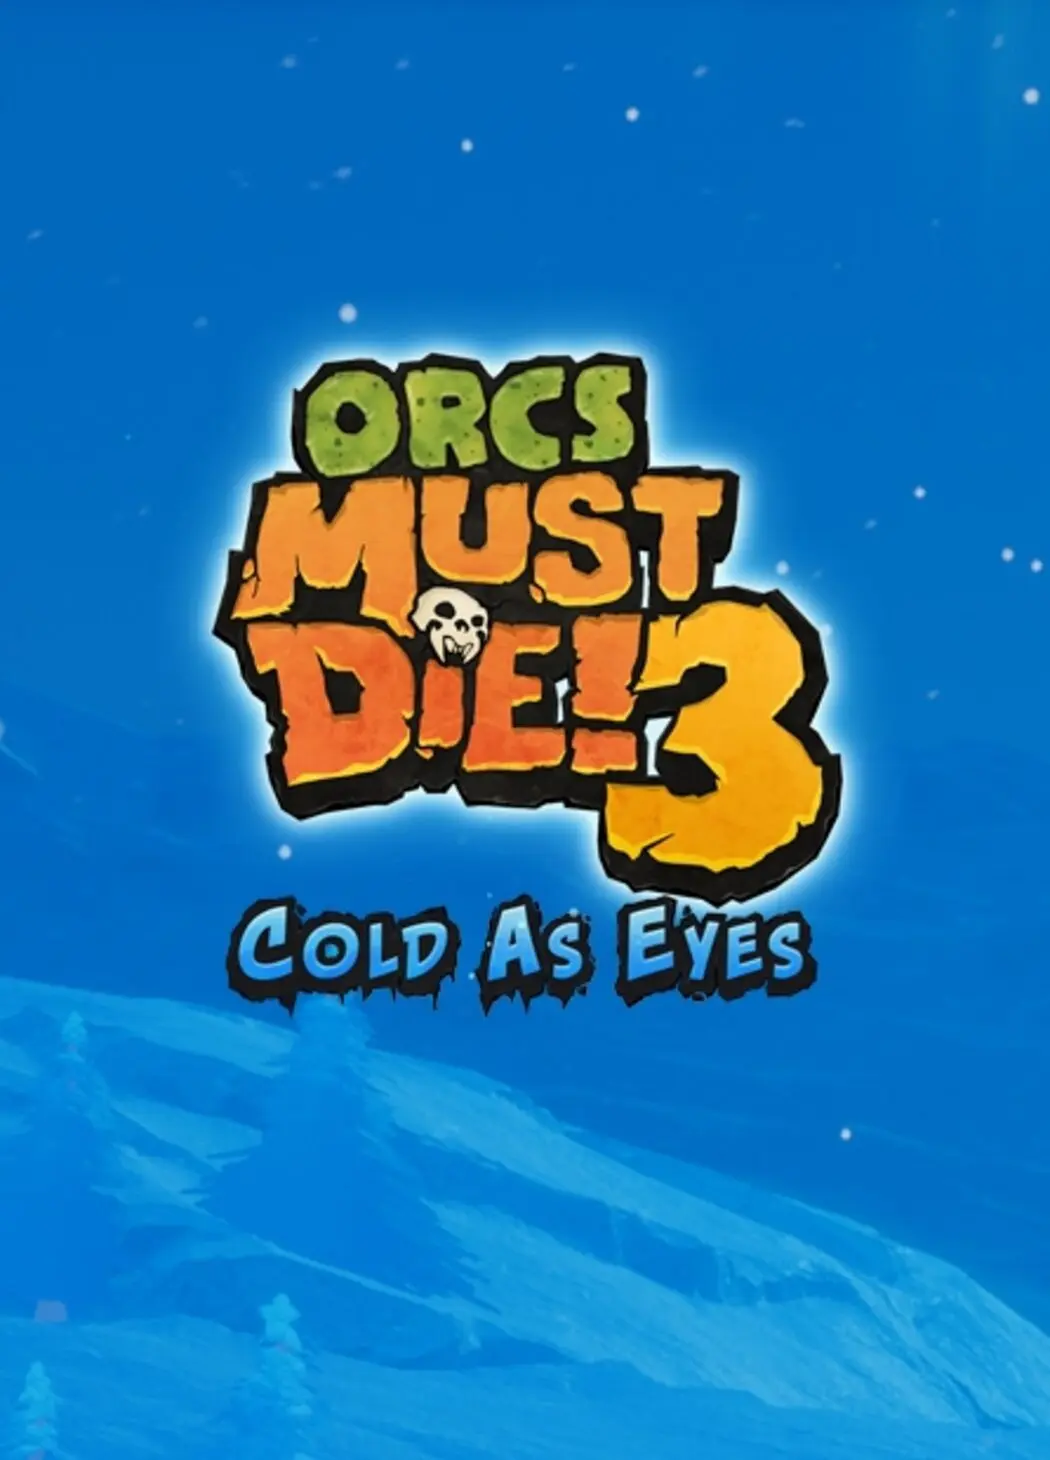 Orcs Must Die! 3 - Cold as Eyes DLC (PC) - Steam - Digital Code